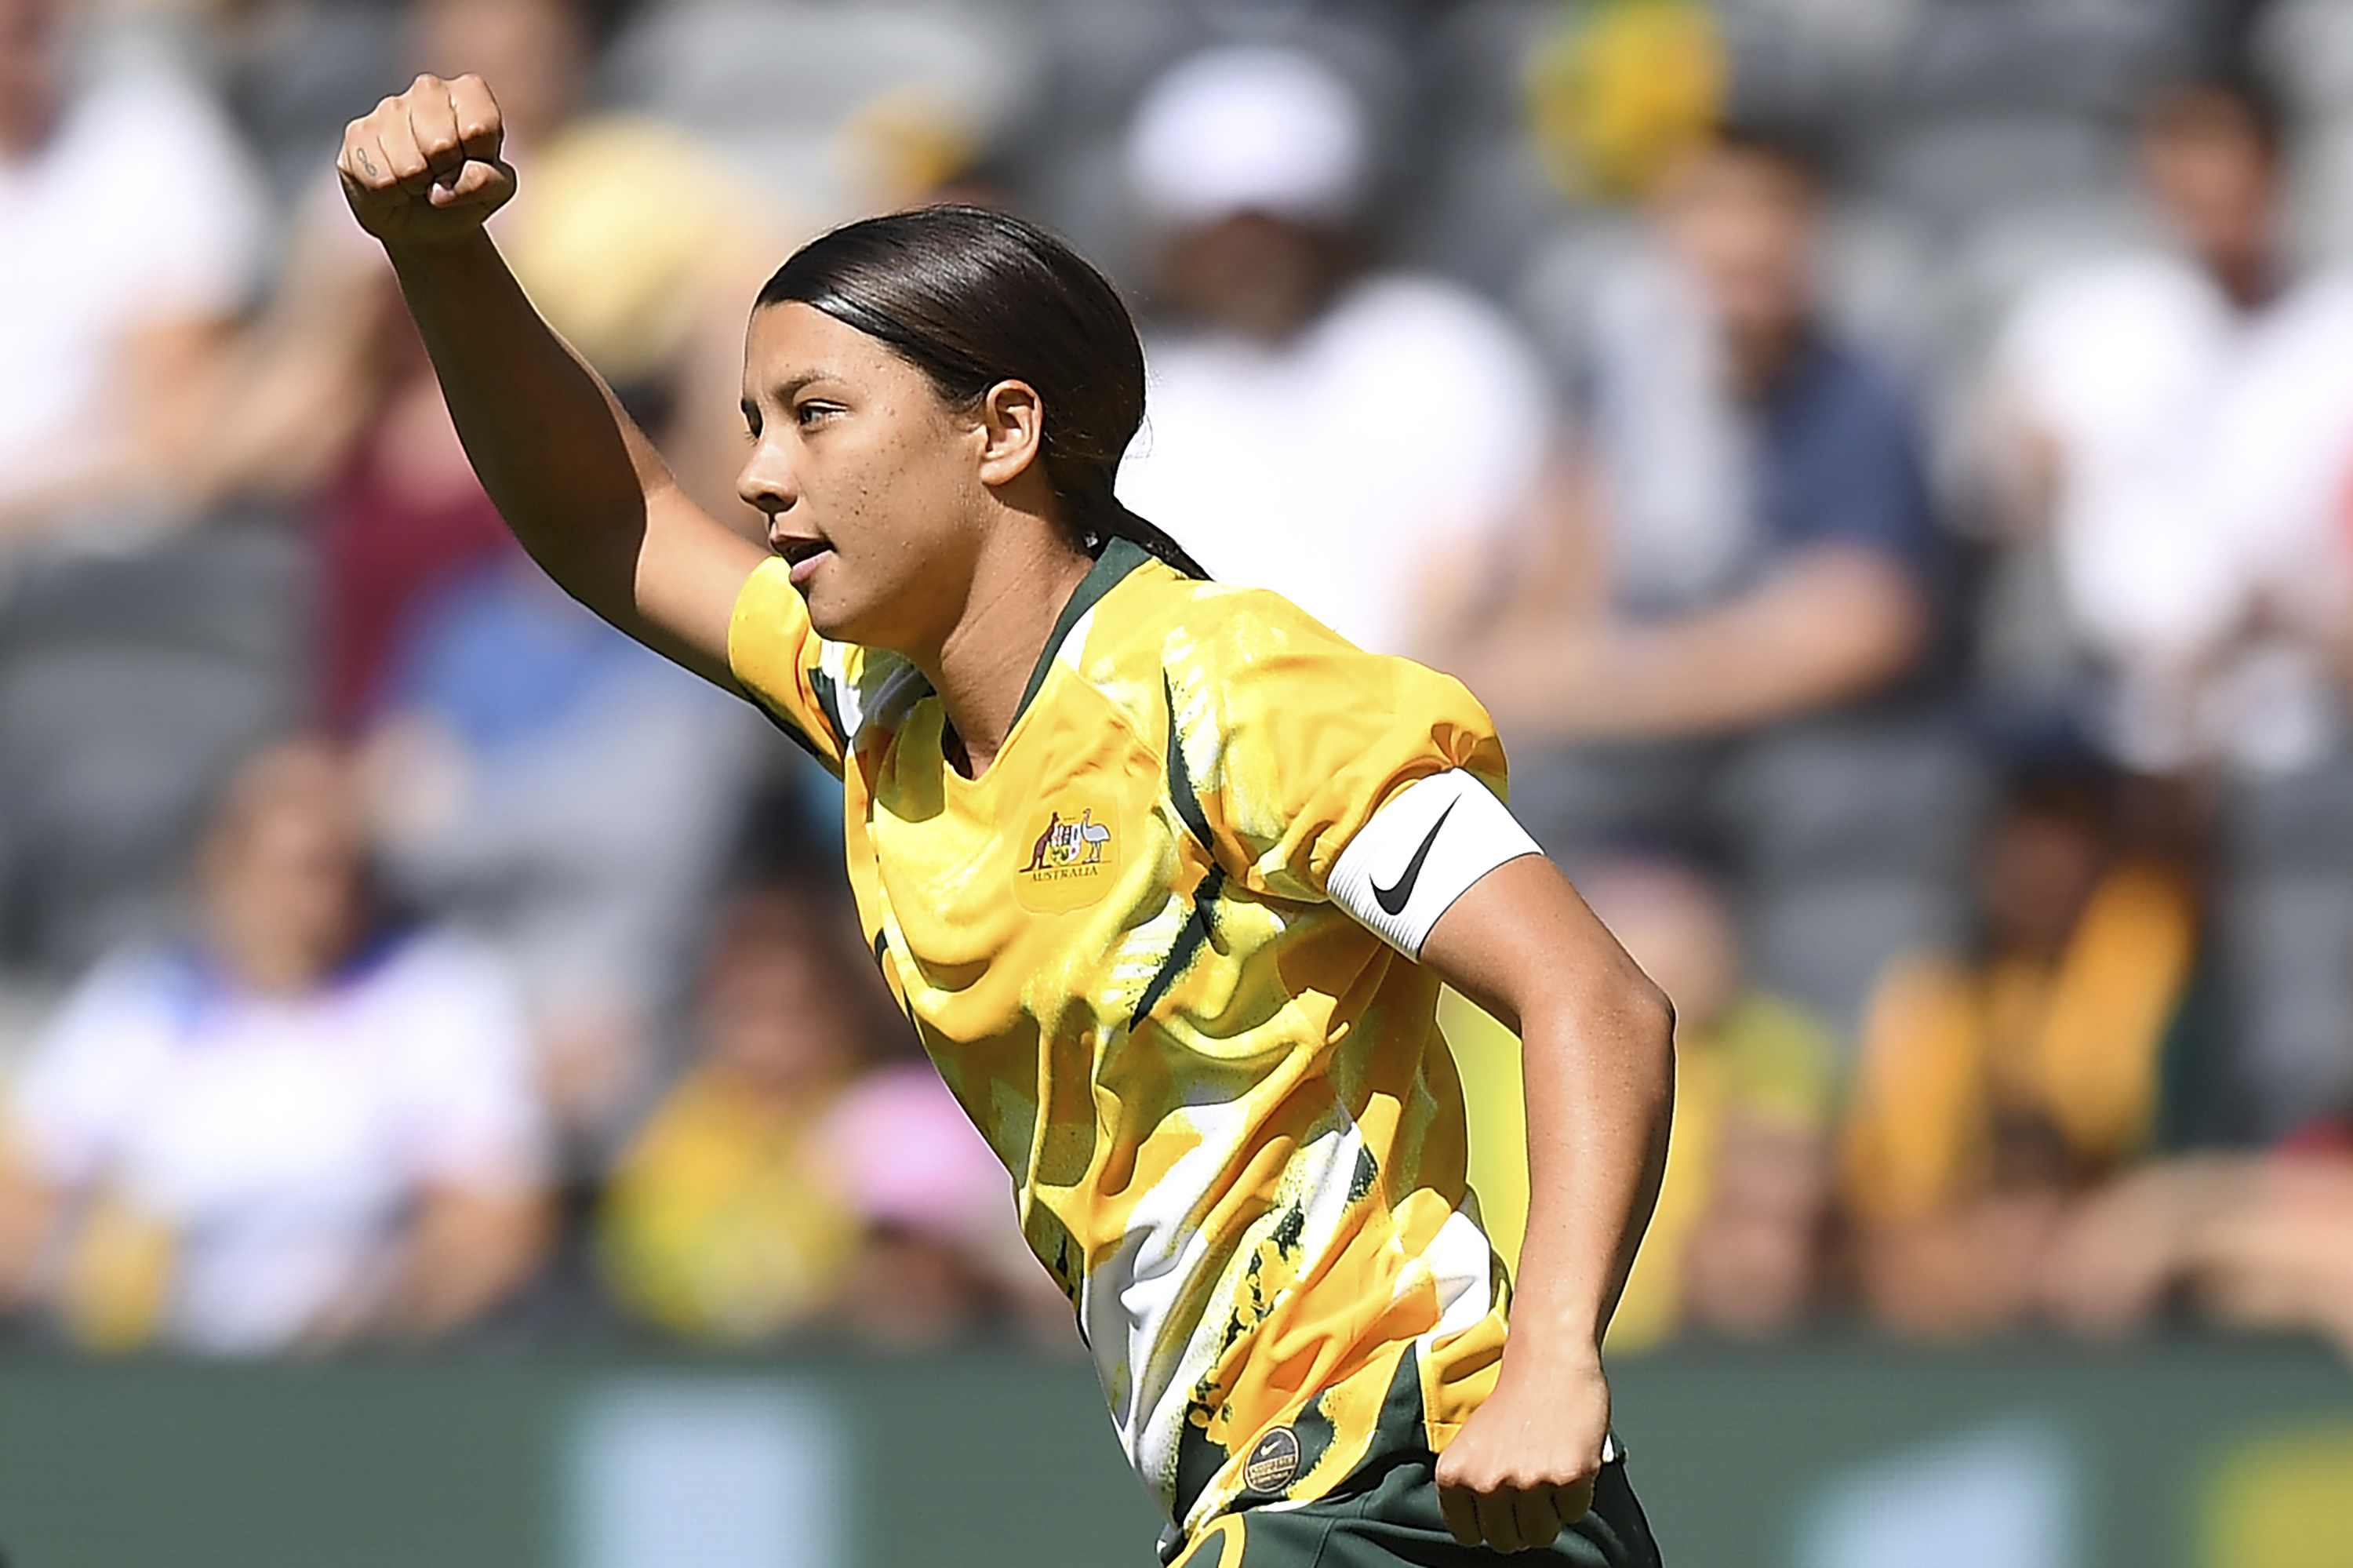 Australia-Chile women's friendly attracts record 20,029 fans